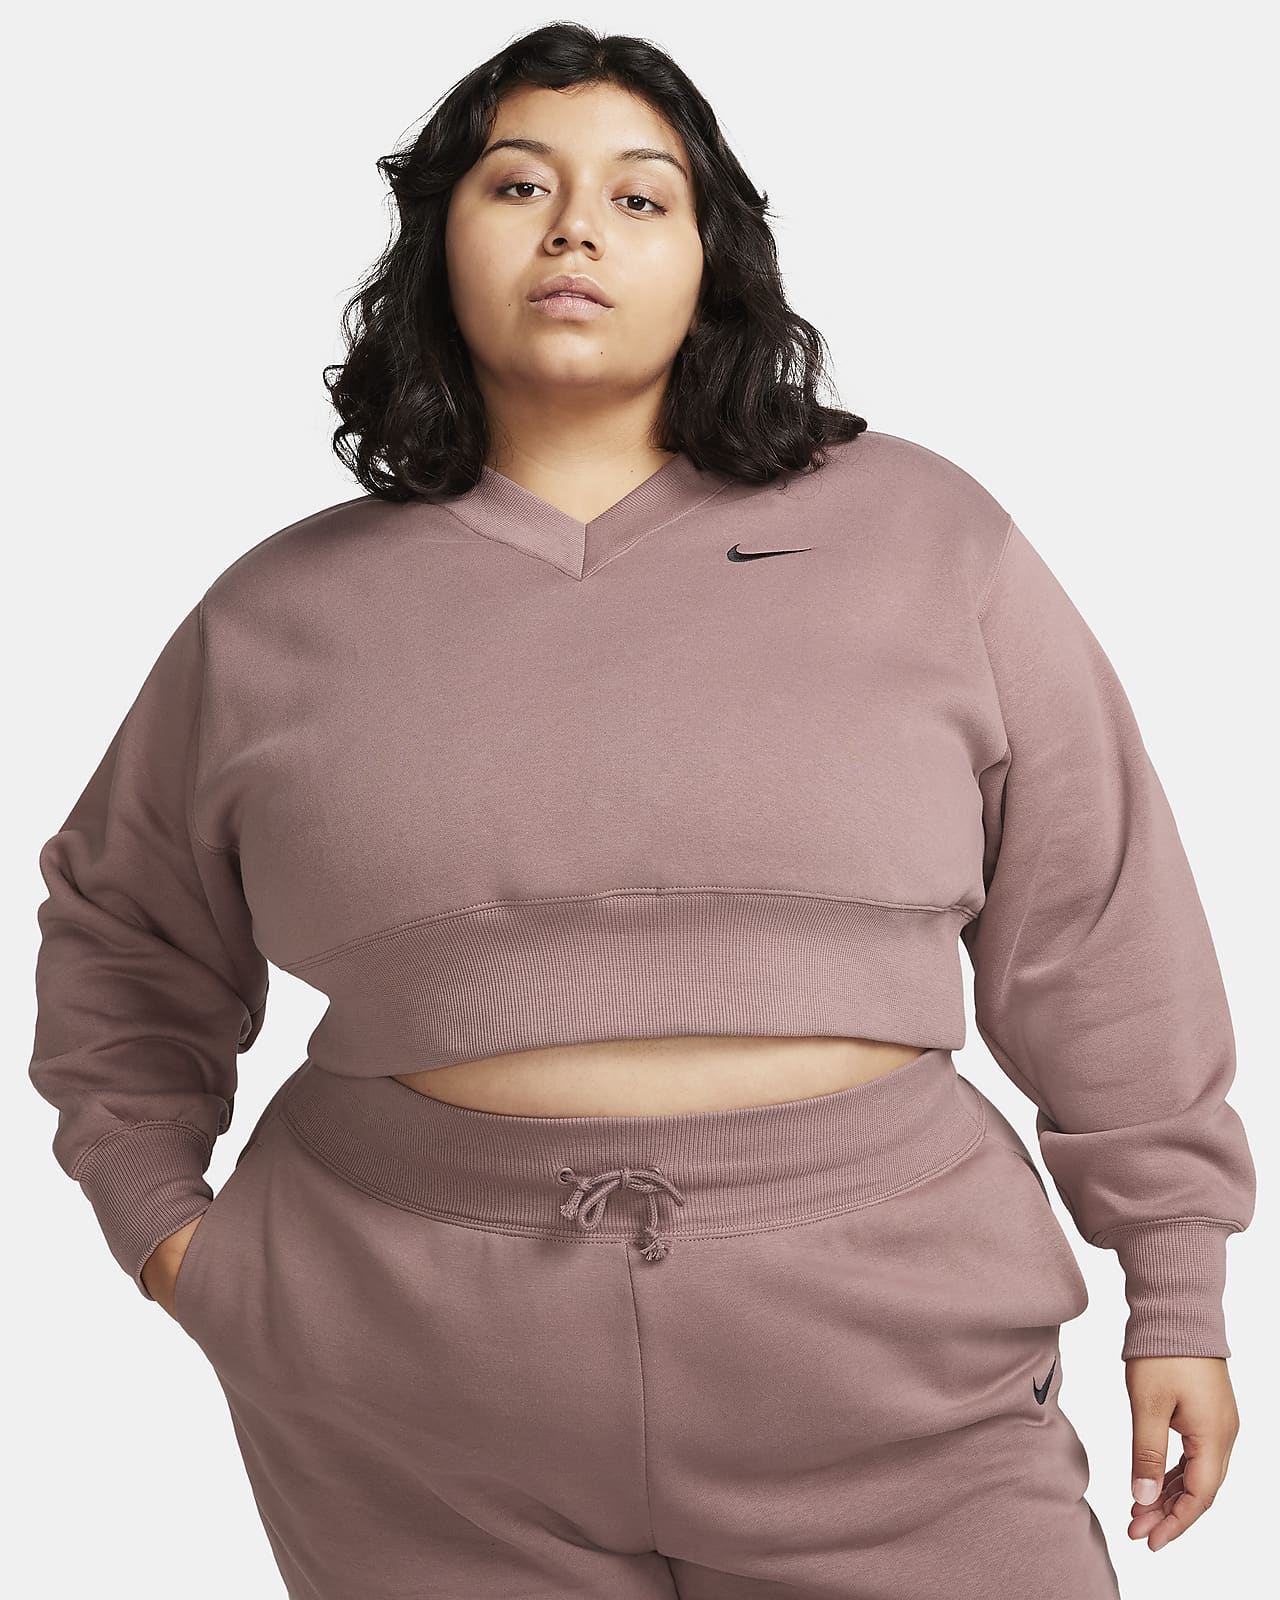 Nike Sportswear Phoenix Fleece Women's Oversized Cropped V-Neck Top (Plus Size)